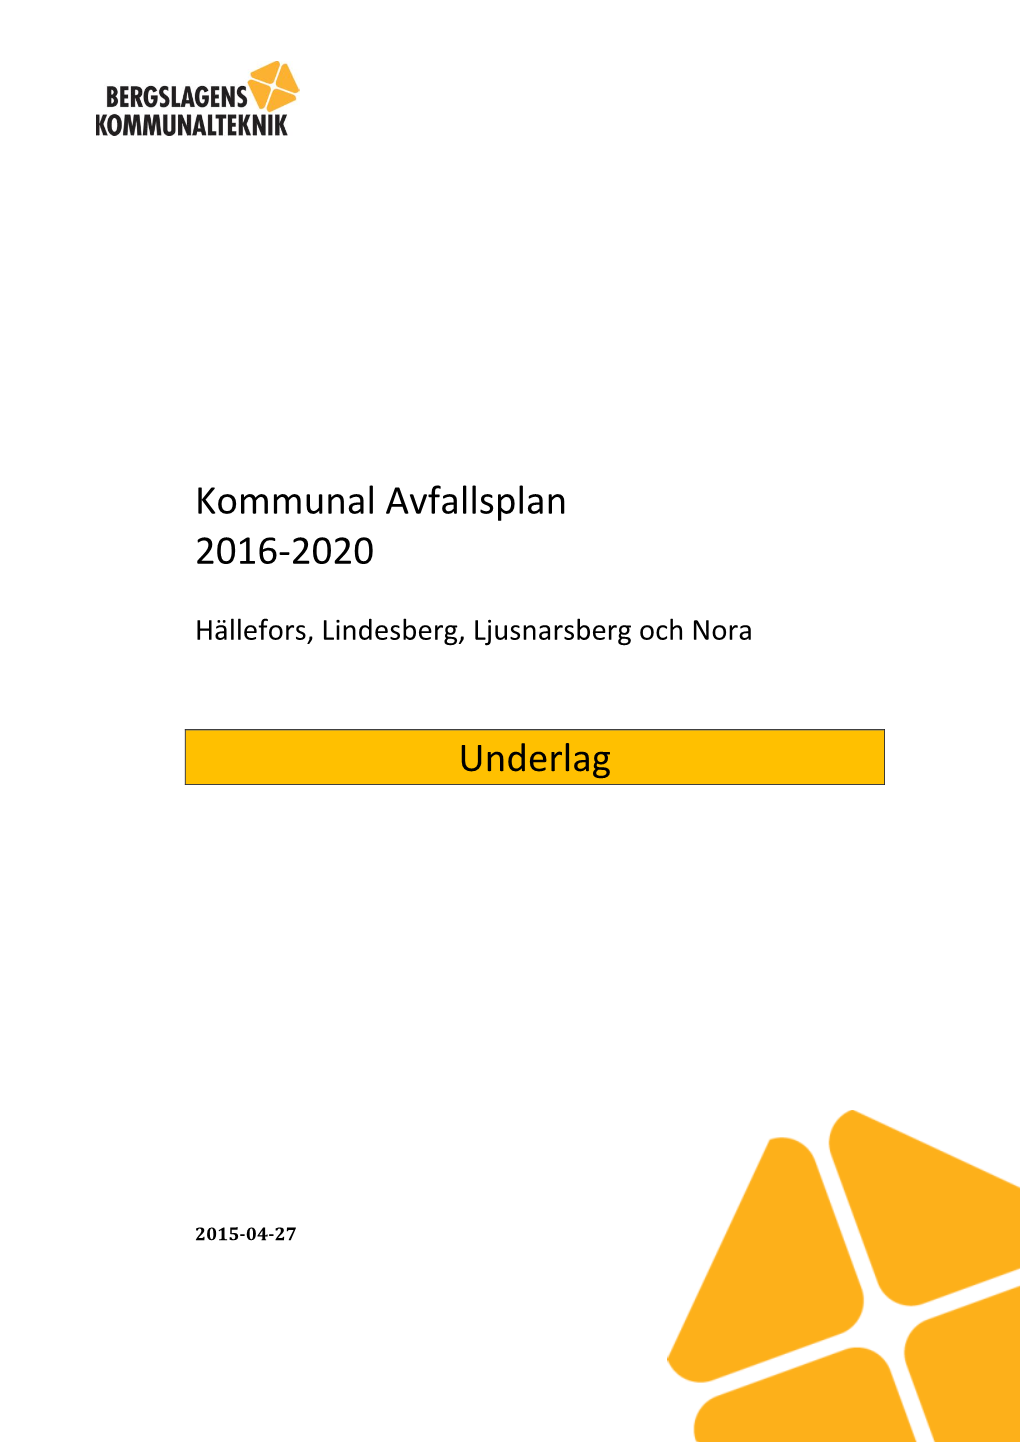 Kommunal Avfallsplan 2016-2020 Underlag